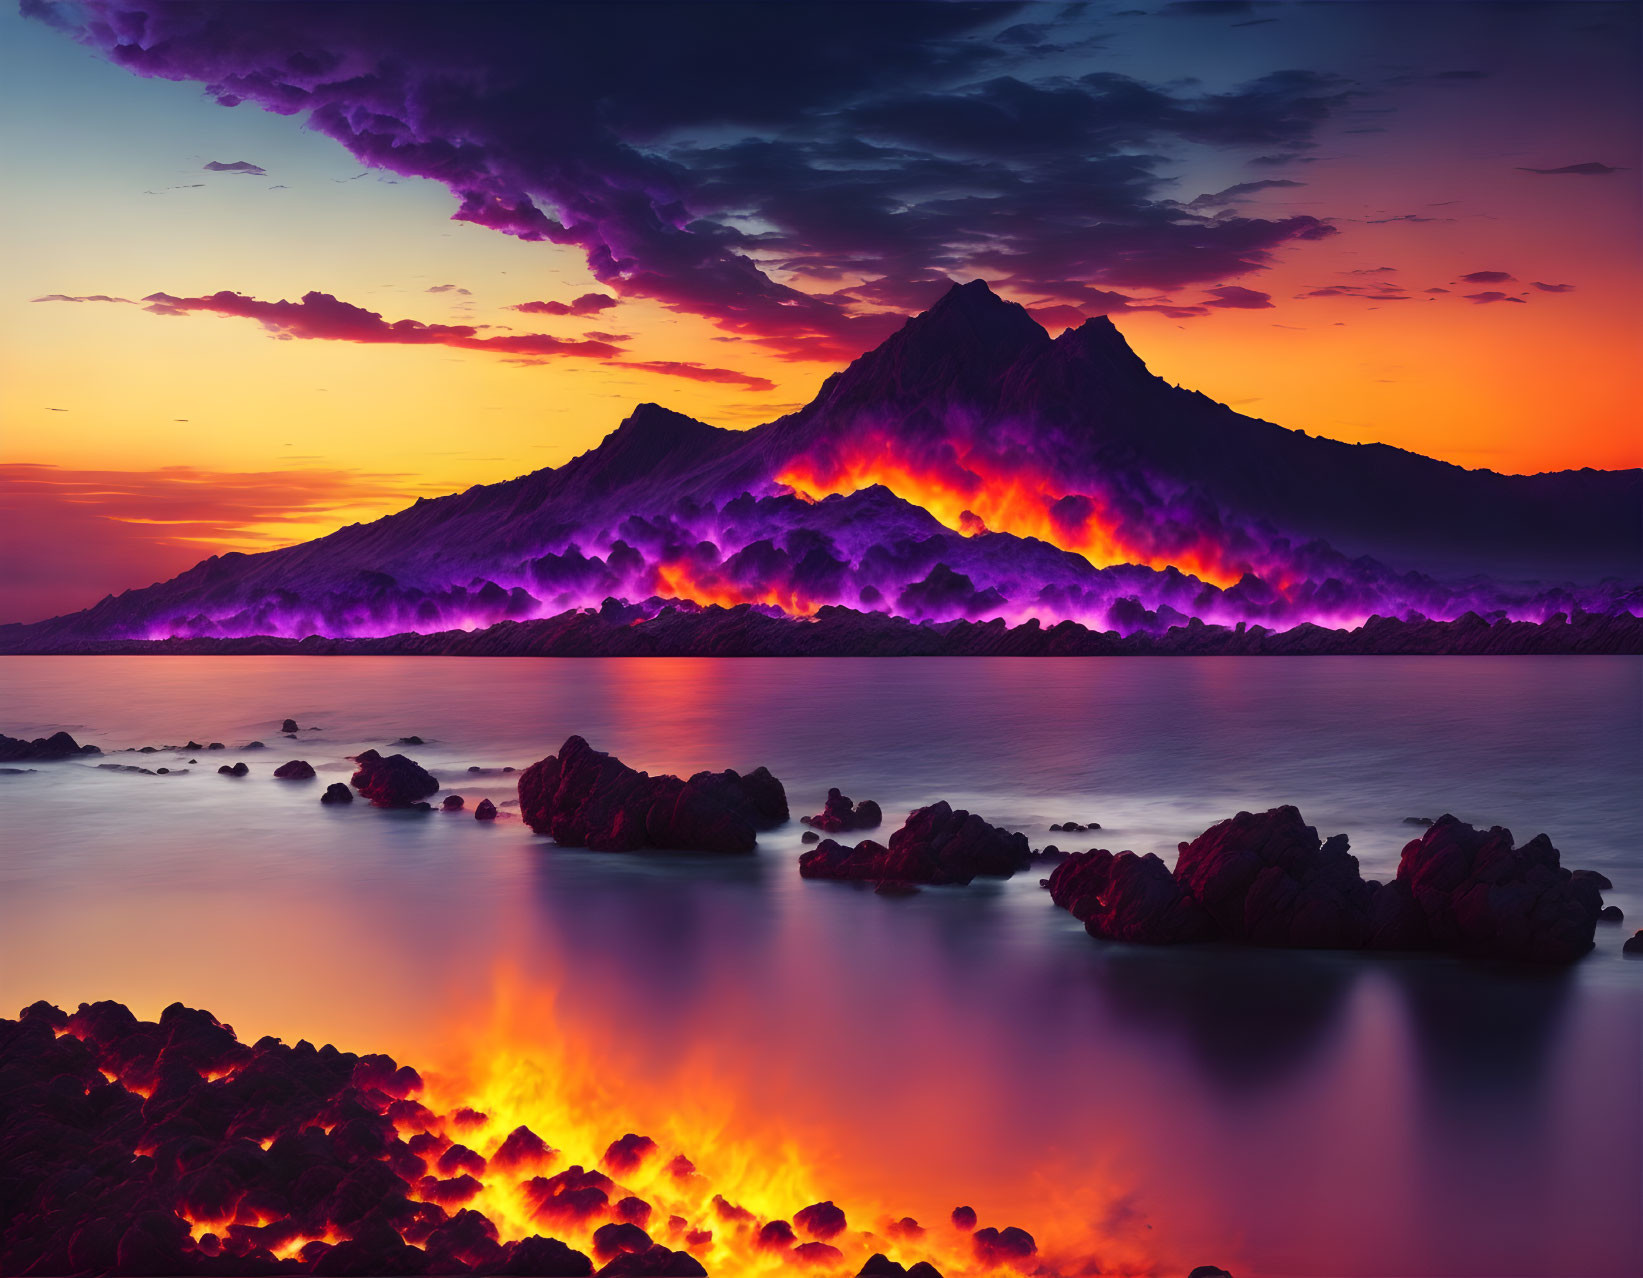 Deep Purple. A Fire In The Sky